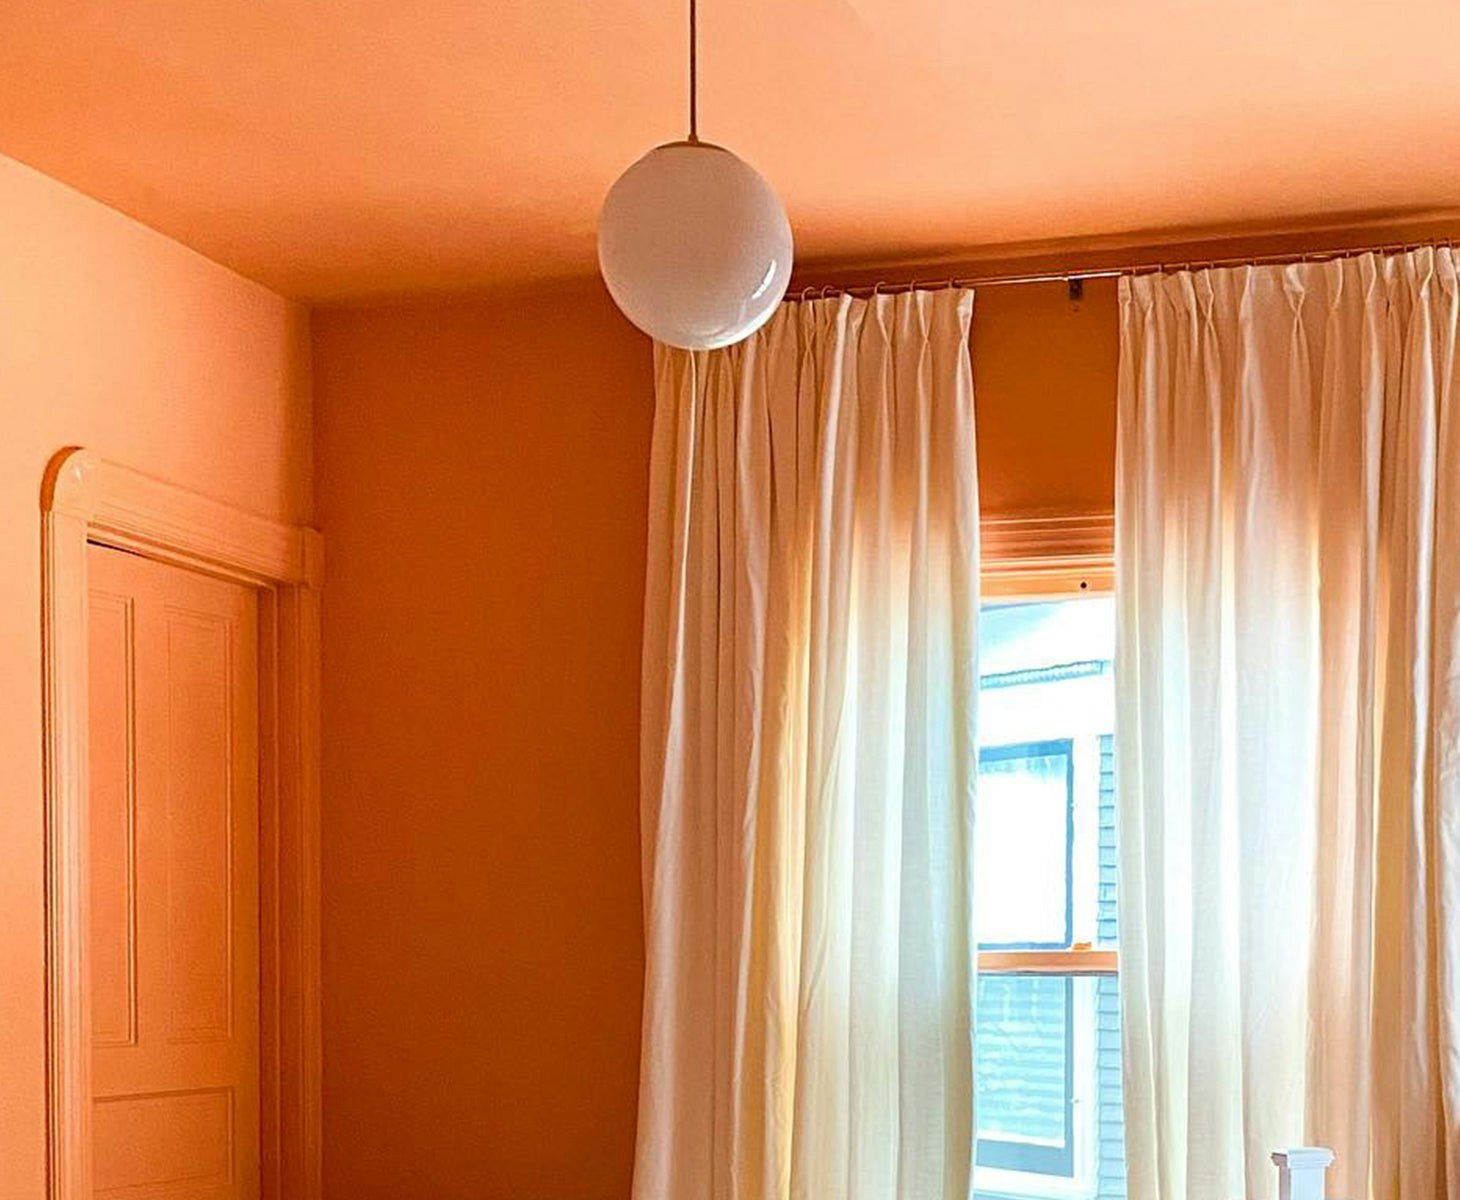 Interior Standard Orange Interior Paint